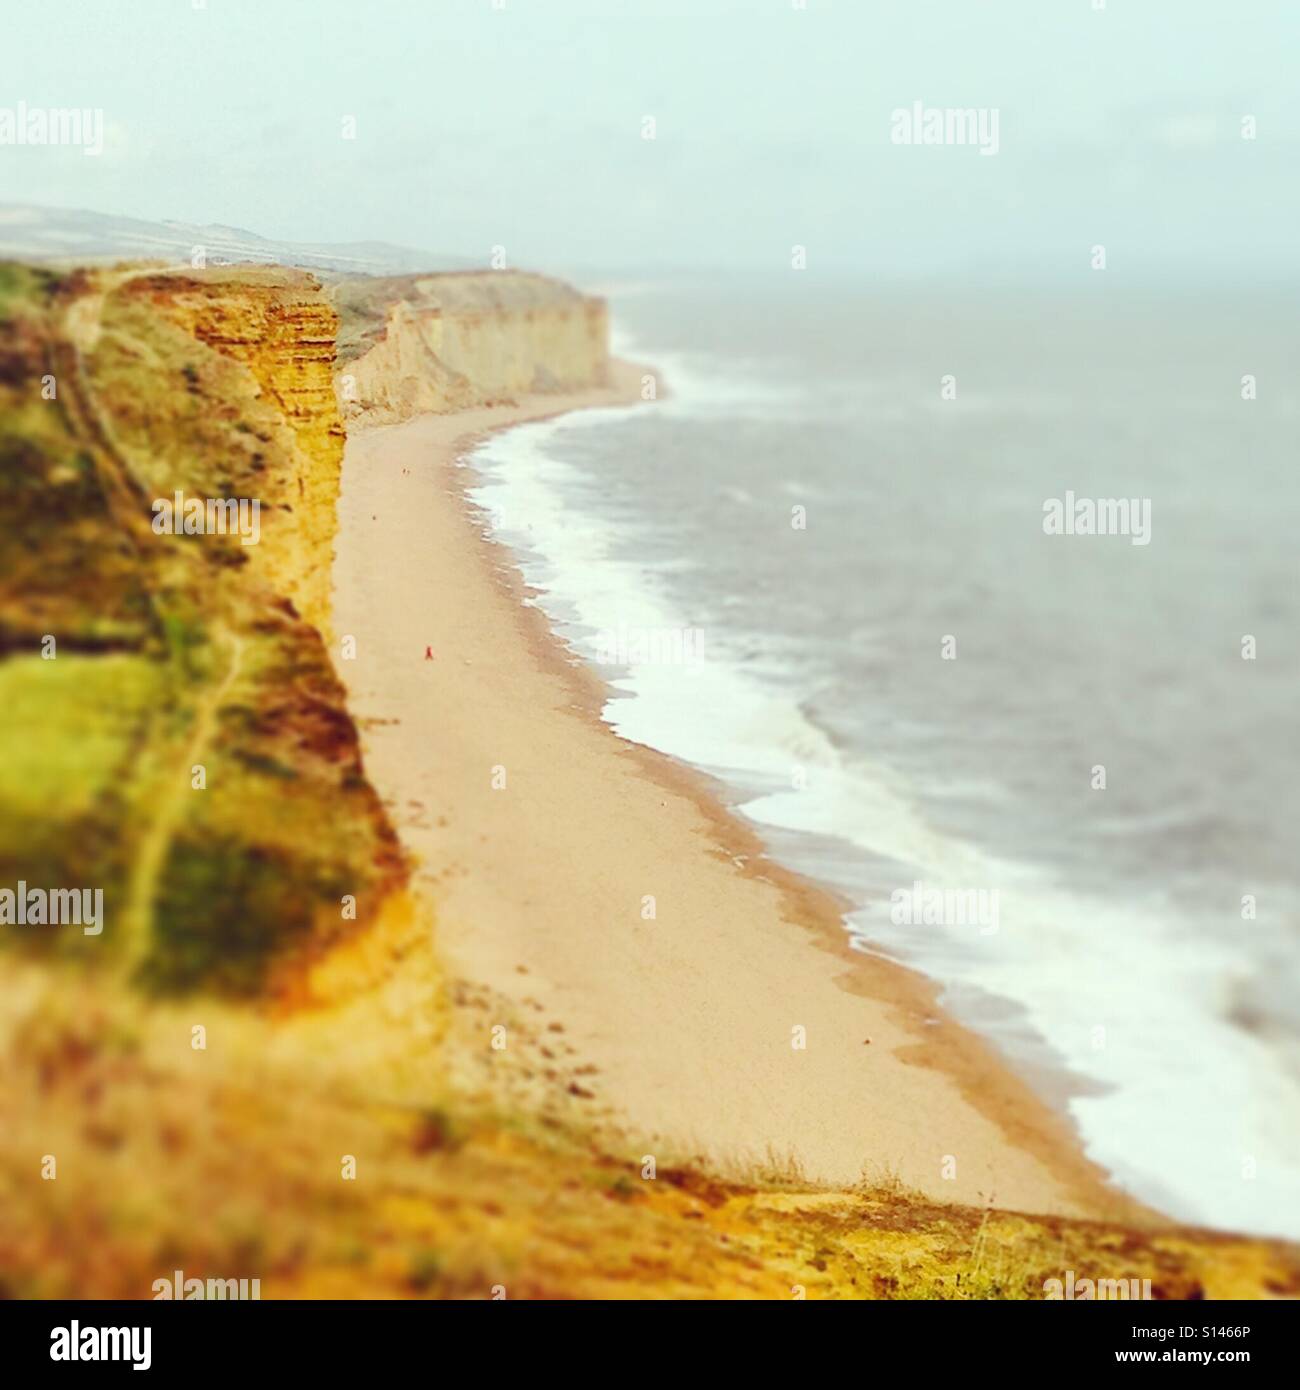 Mit Blick auf die Jurassic Coast in der Nähe von West Bay, Dorset. Der Jurassic Coast ist ein UNESCO-Welterbe an der englischen Kanalküste Südenglands. Stockfoto